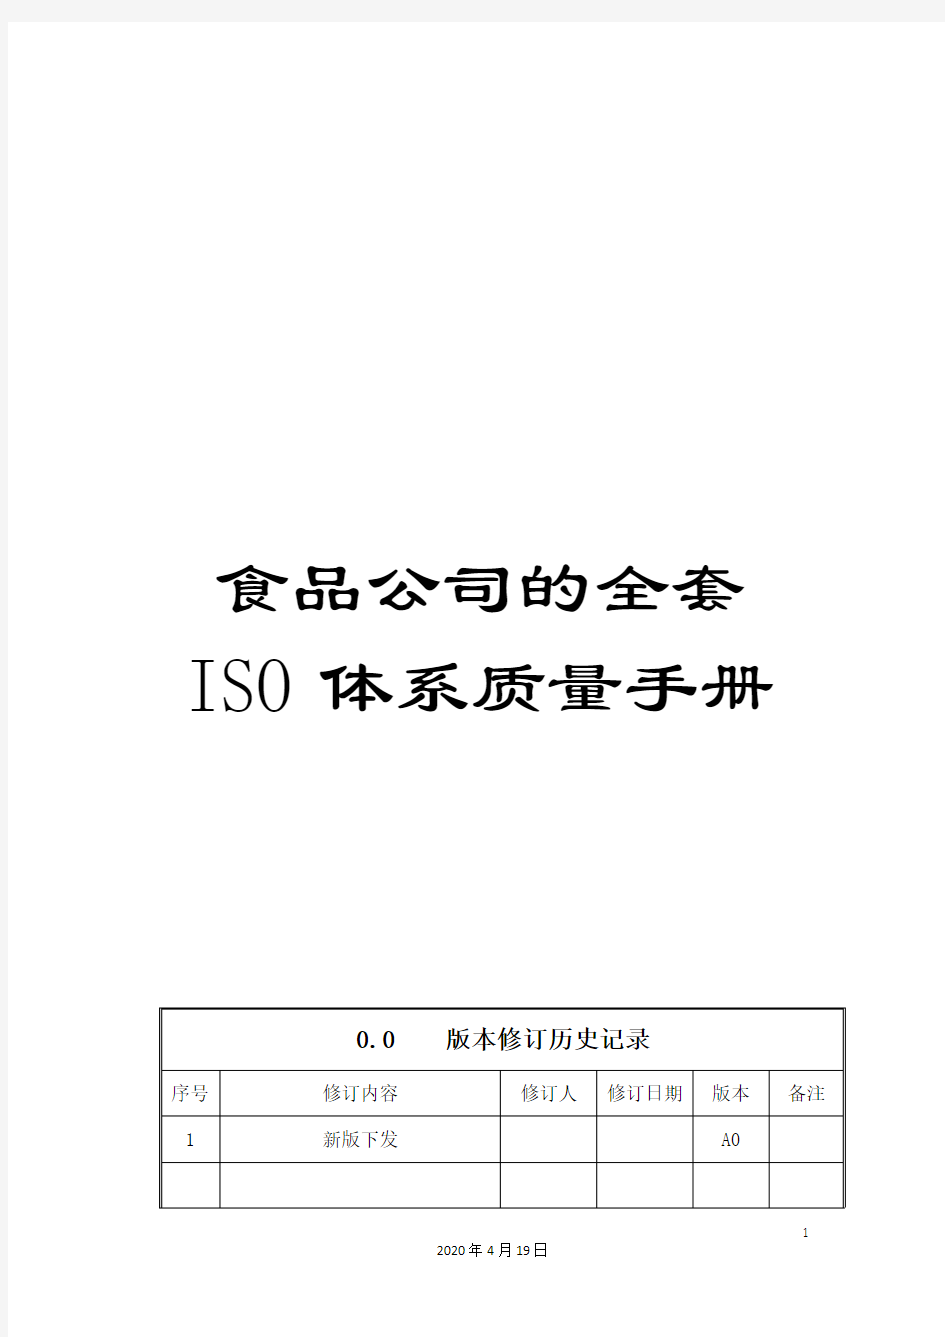 食品公司的全套ISO体系质量手册